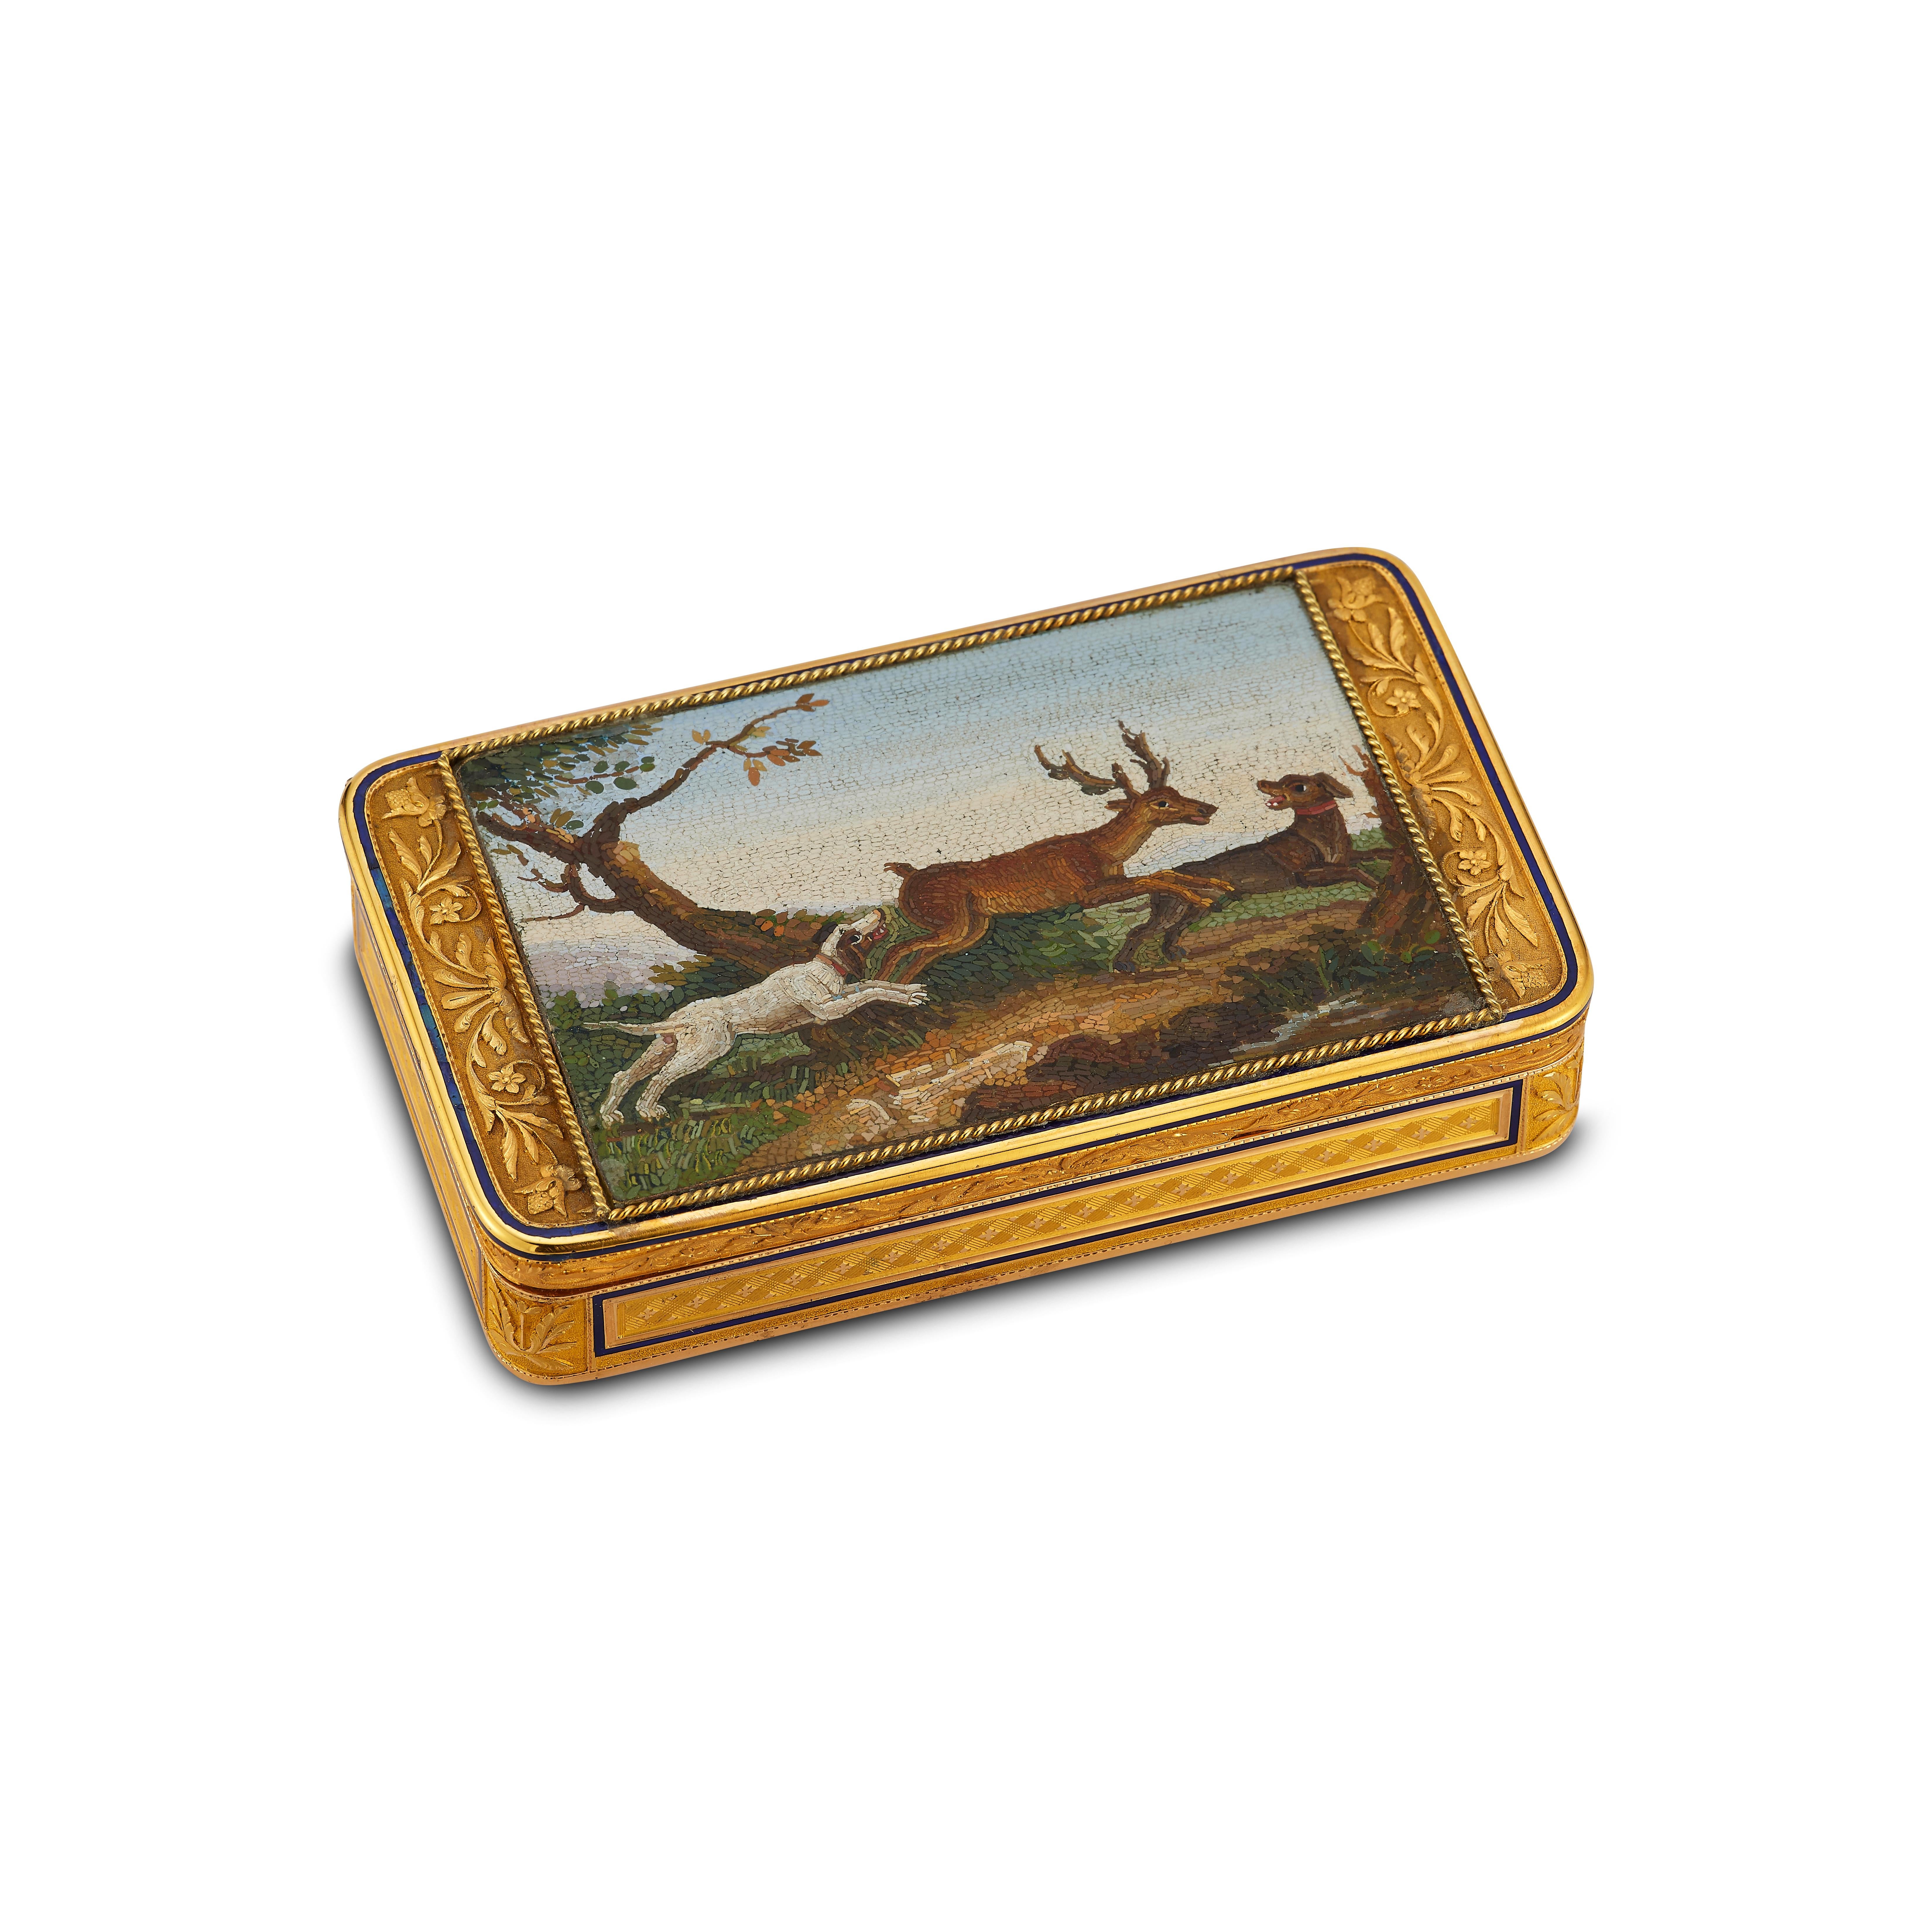 Tabatière en micro mosaïque d'or

Tabatière en or 18 carats rehaussée d'émail bleu serti d'une micro-mosaïque de chiens chassant un cerf 

Circa 1850's

Dimensions : 3,44